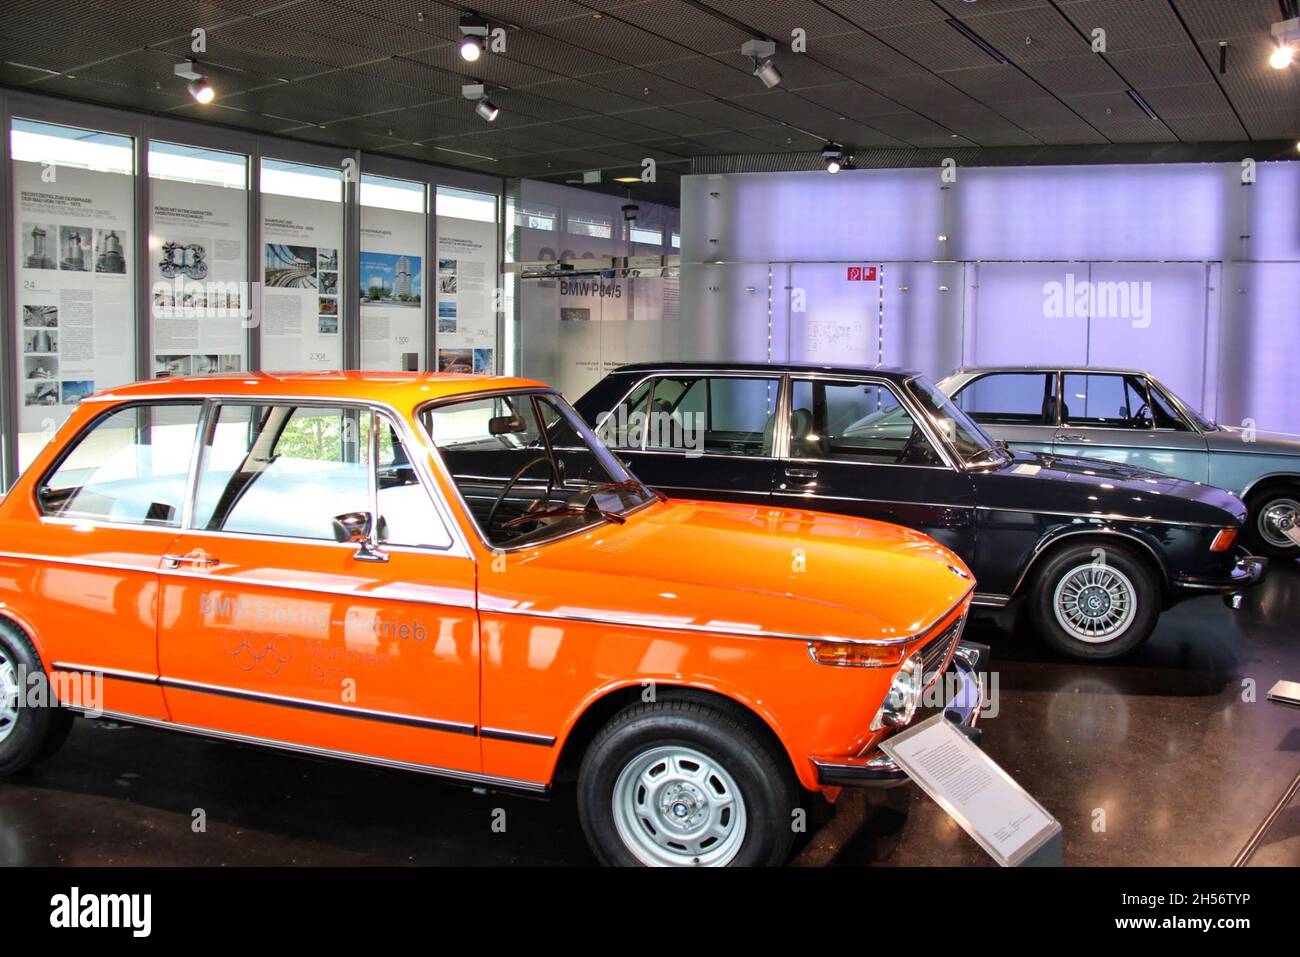 BMW 2002 TI , couleur orange .La BMW série 02 est une gamme de voitures de luxe compactes produites par BMW entre 1966 et 1977.Musée BMW, Munich, Allemagne Banque D'Images